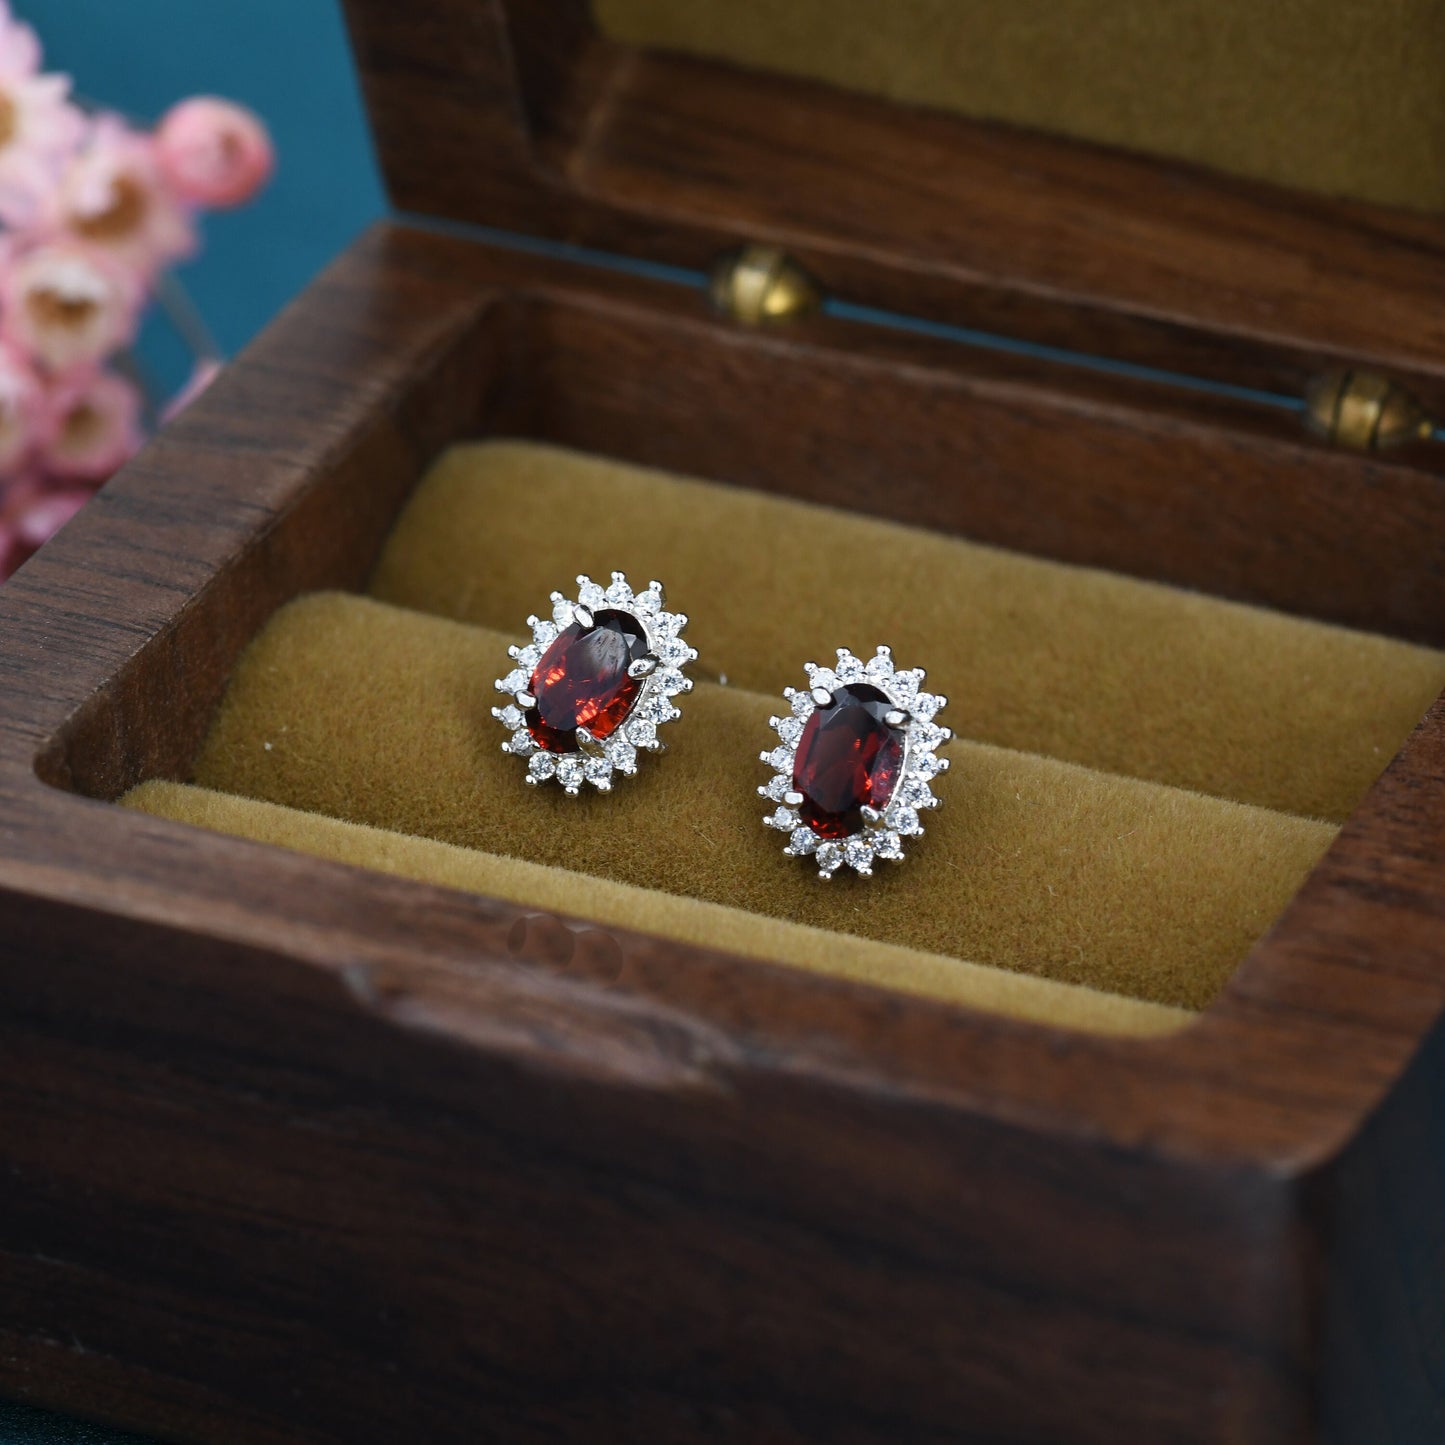 Genuine Garnet Red Crystal Stud Earrings in Sterling Silver, Natural Red Garnet Oval Stud Earrings